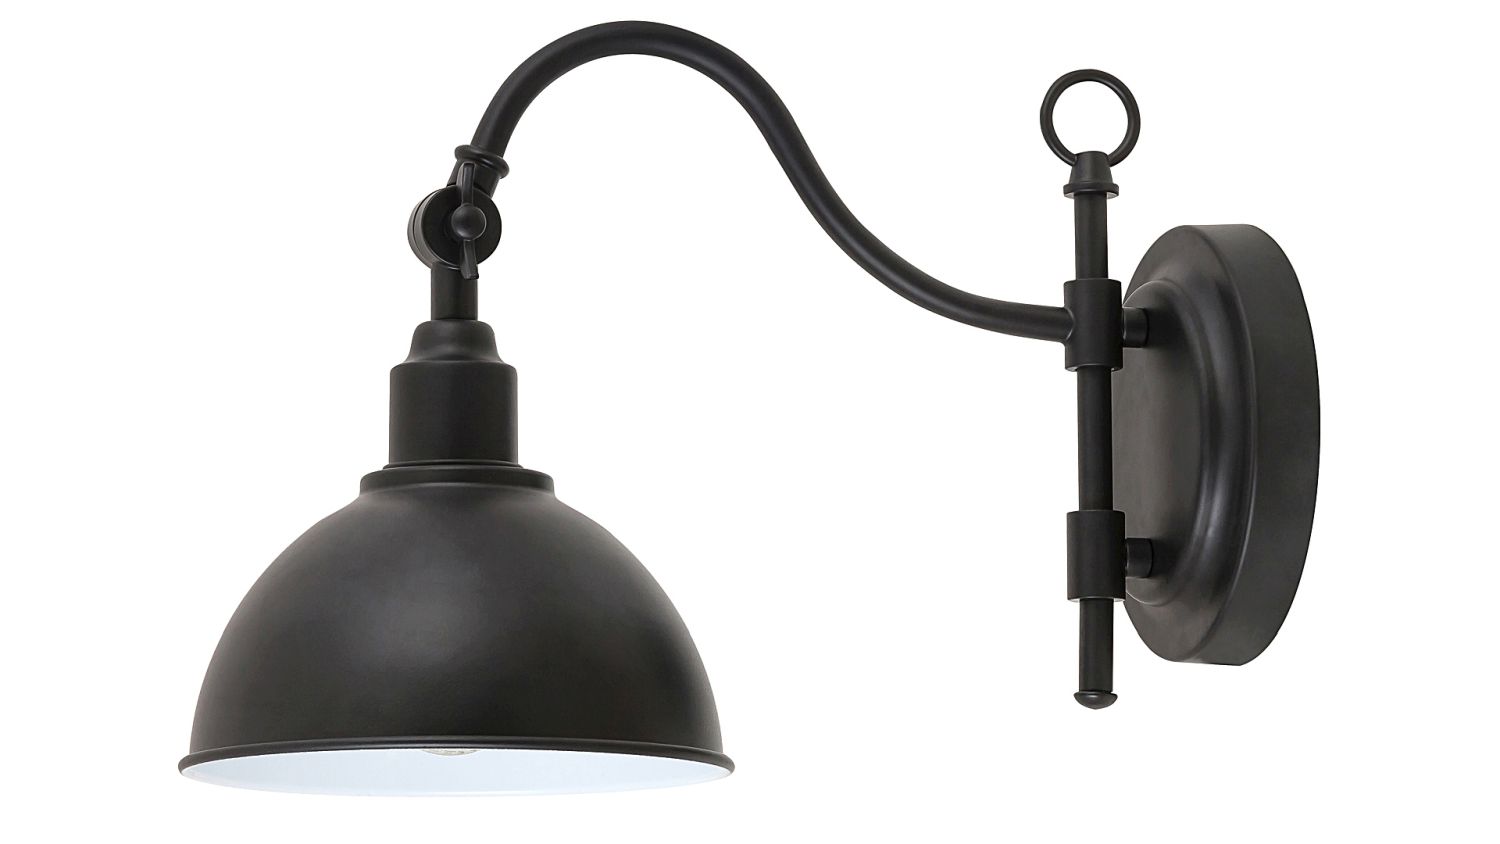 Wandlampe Metall Industrial Design E27 schwenkbar